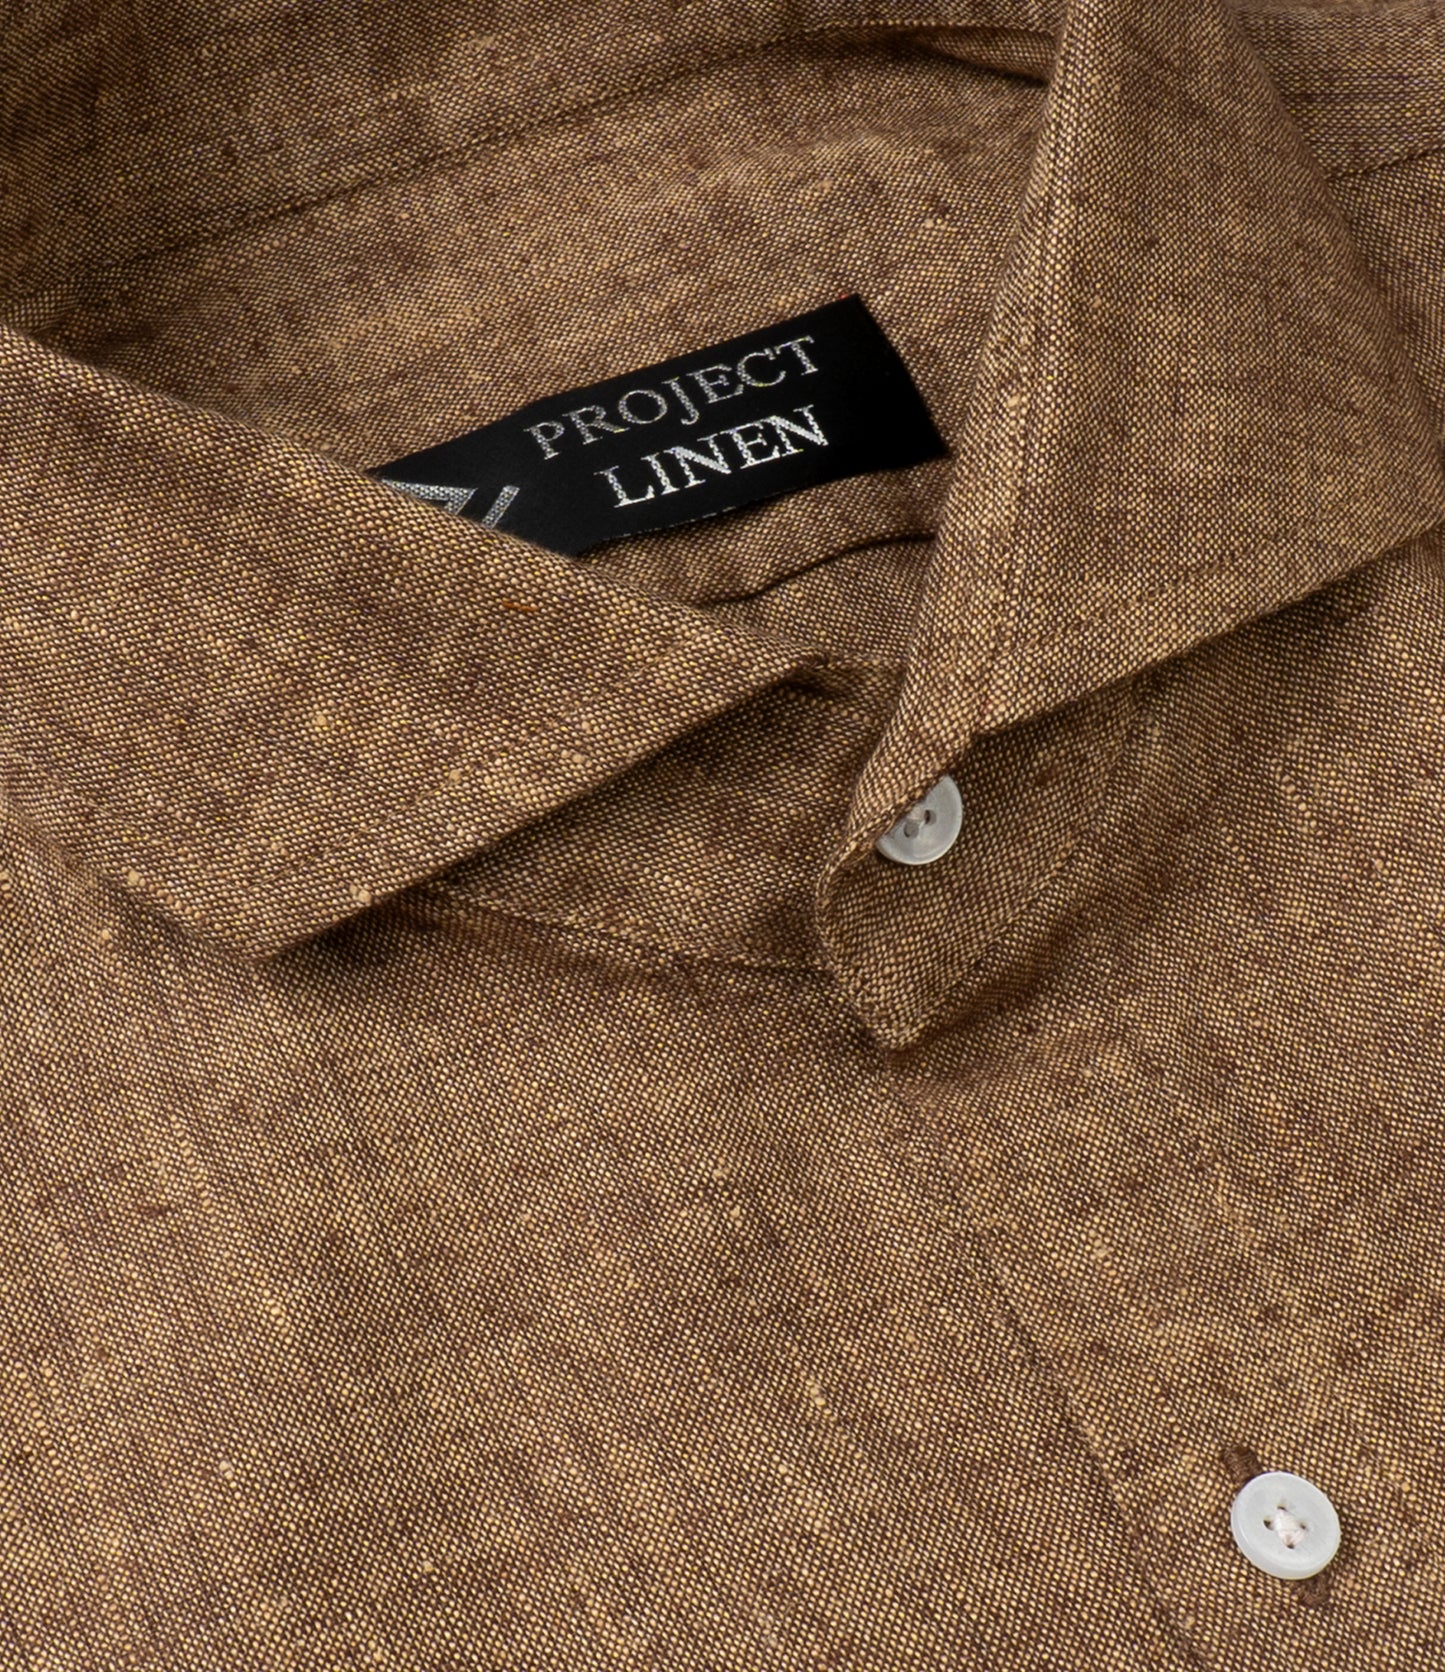 Brown Linen Shirt